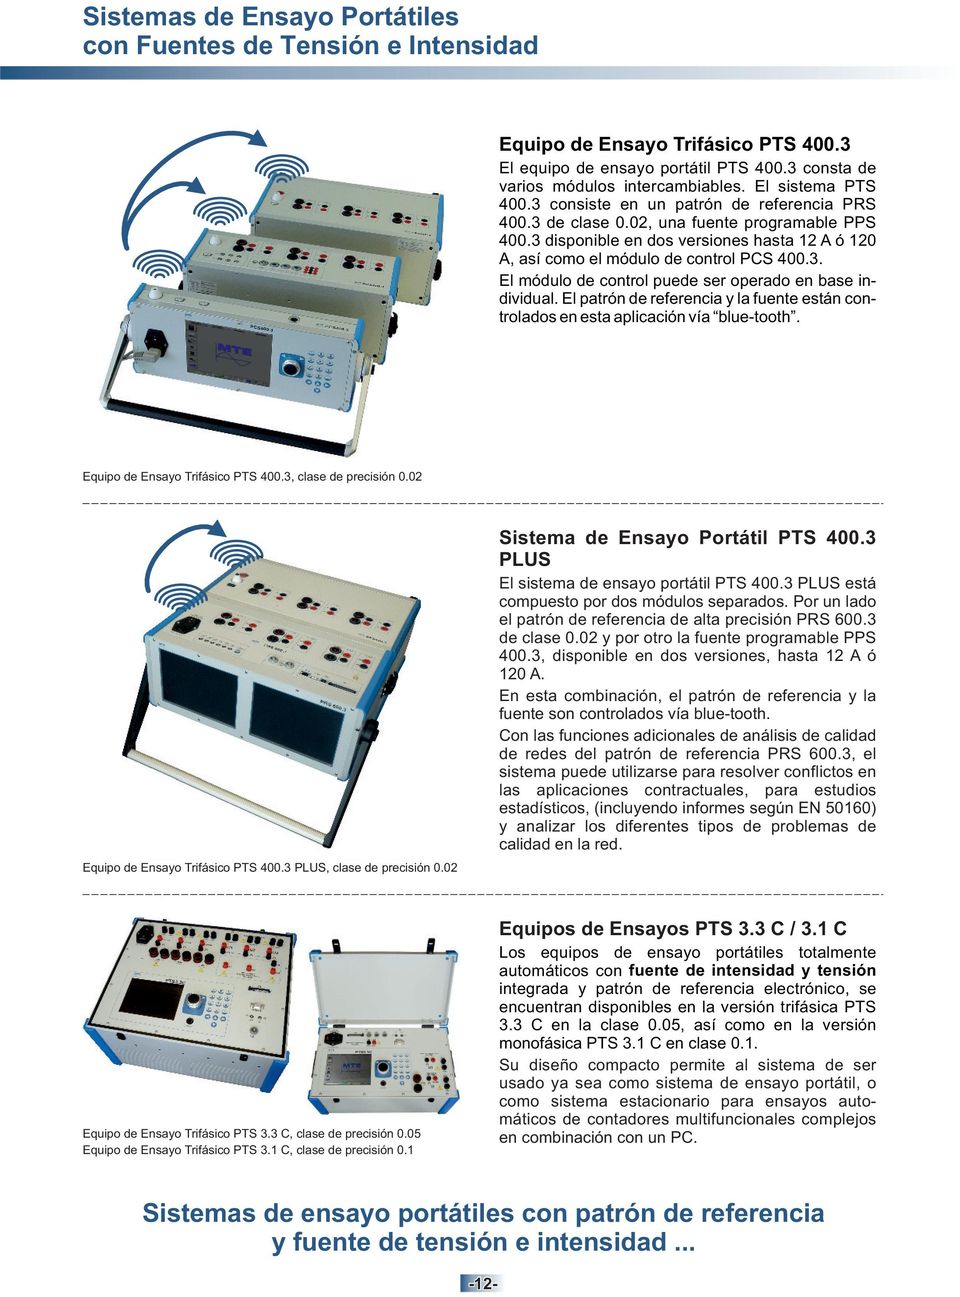 3 disponible en dos versiones hasta 12 A ó 120 A, así como el módulo de control PCS 400.3. El módulo de control puede ser operado en base individual.